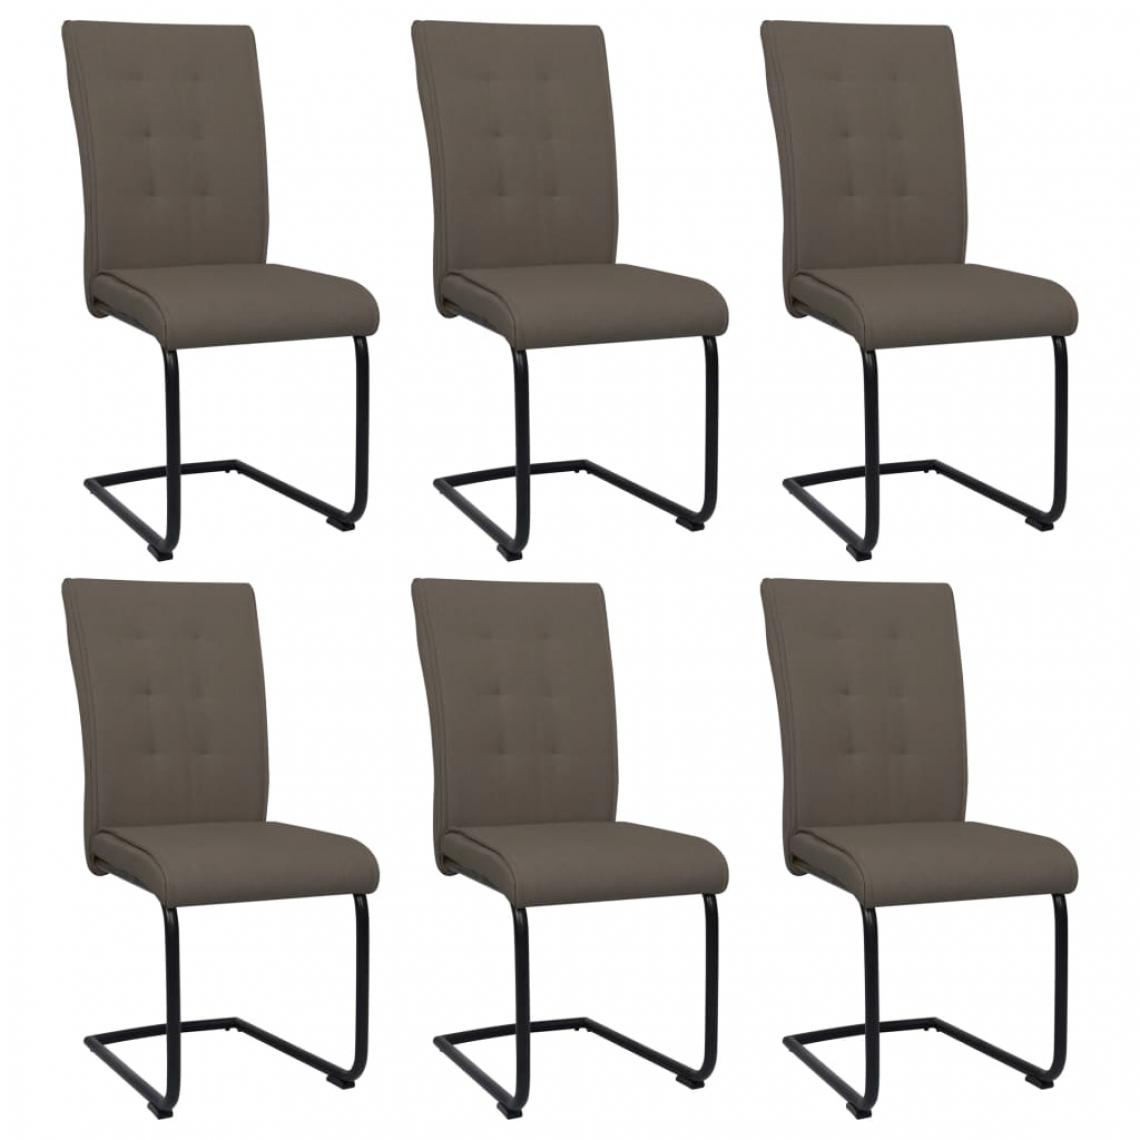 Icaverne - Contemporain Fauteuils et chaises gamme Tbilissi Chaises de salle à manger cantilever 6 pcs Taupe Tissu - Chaises